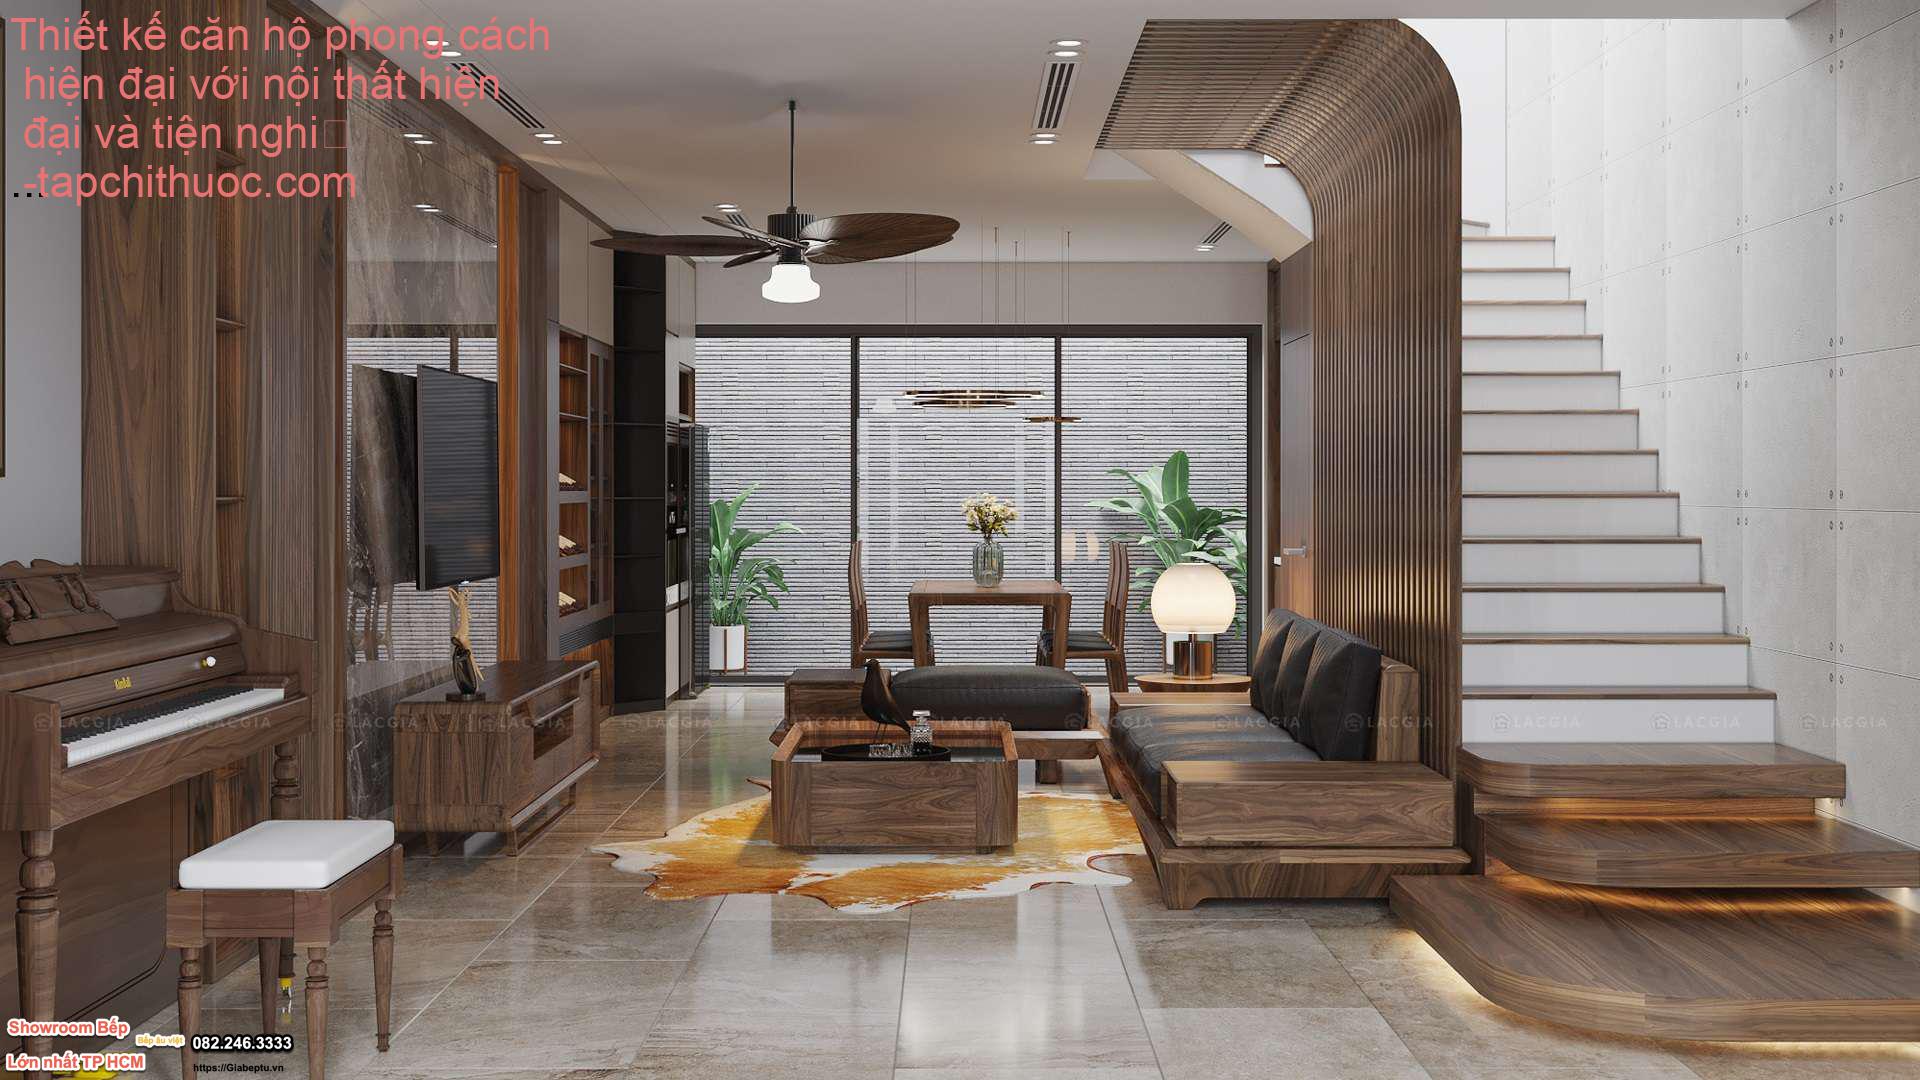 Thiết kế căn hộ phong cách hiện đại với nội thất hiện đại và tiện nghi
